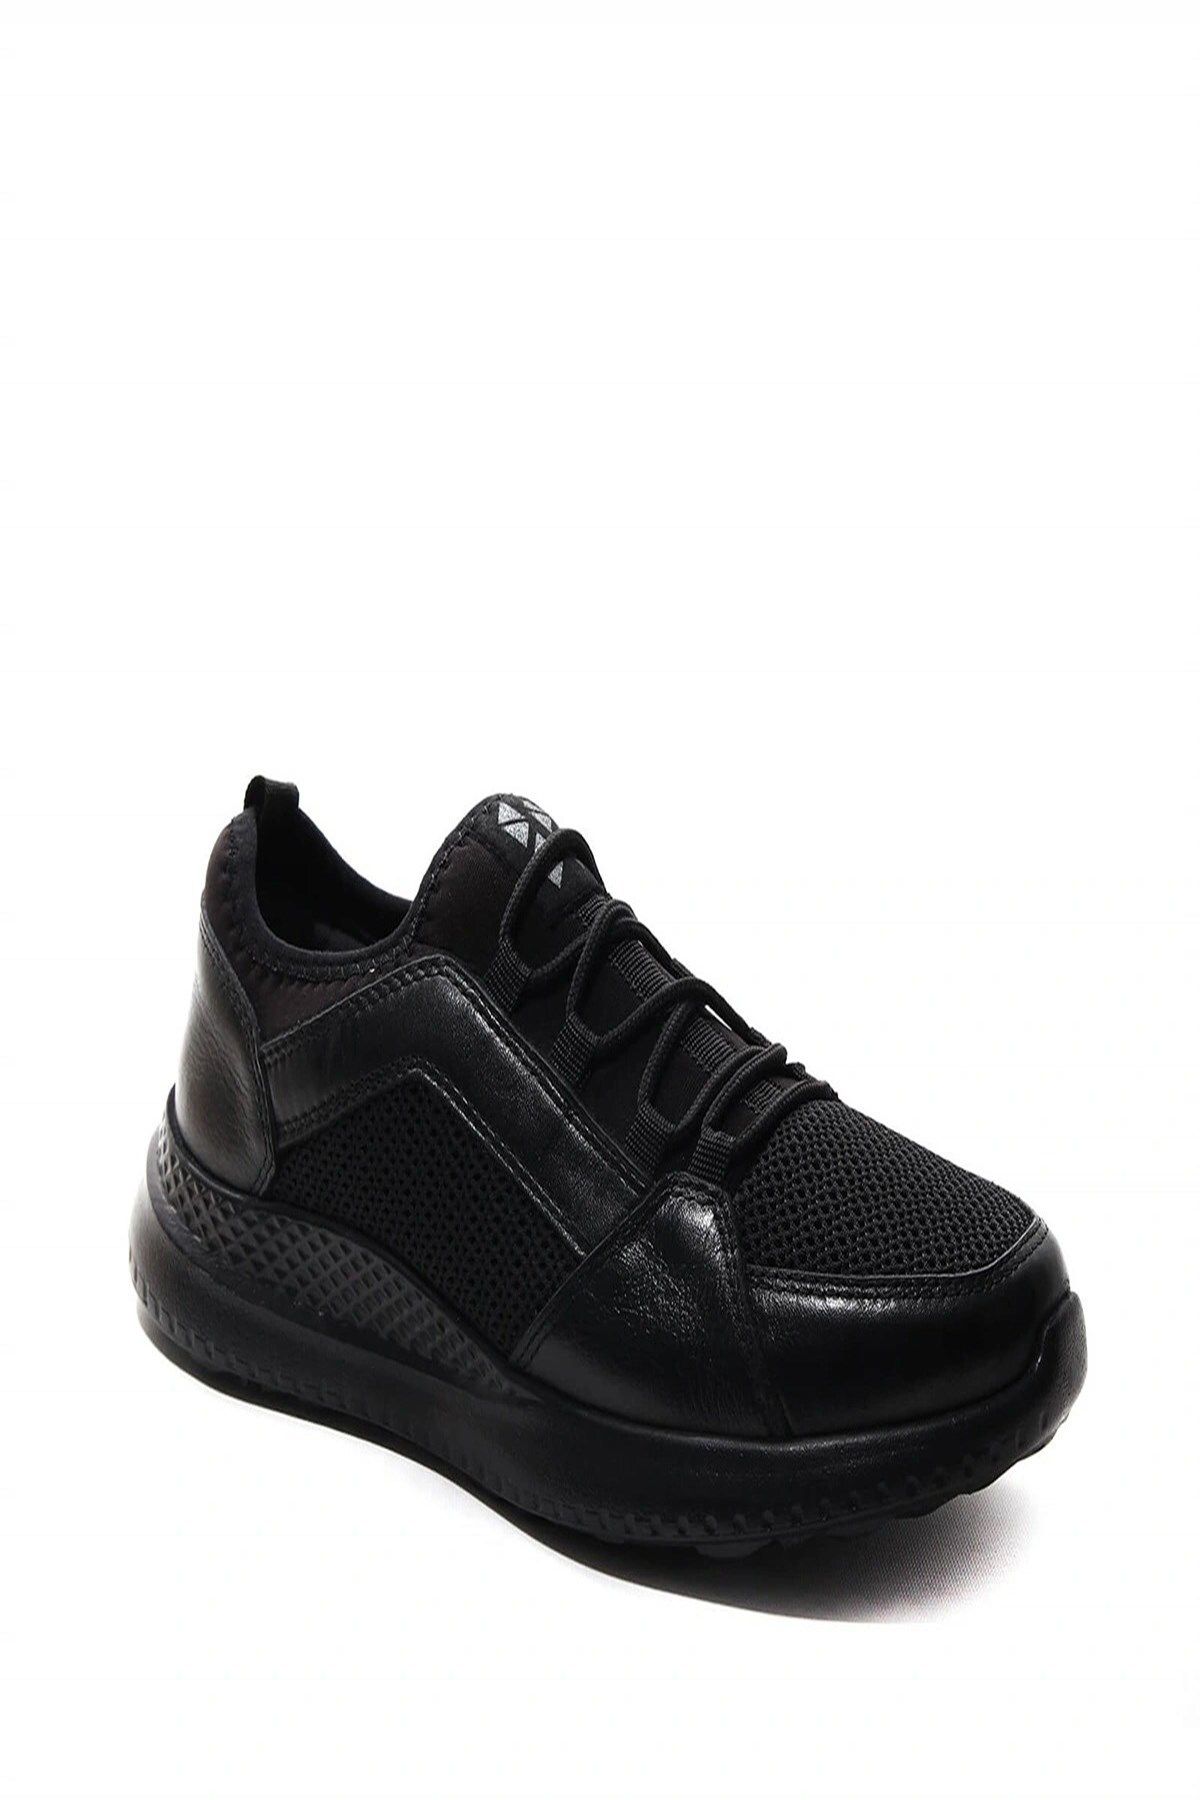 Forelli 47901 Erkek Comfort Ayakkabı - Siyah